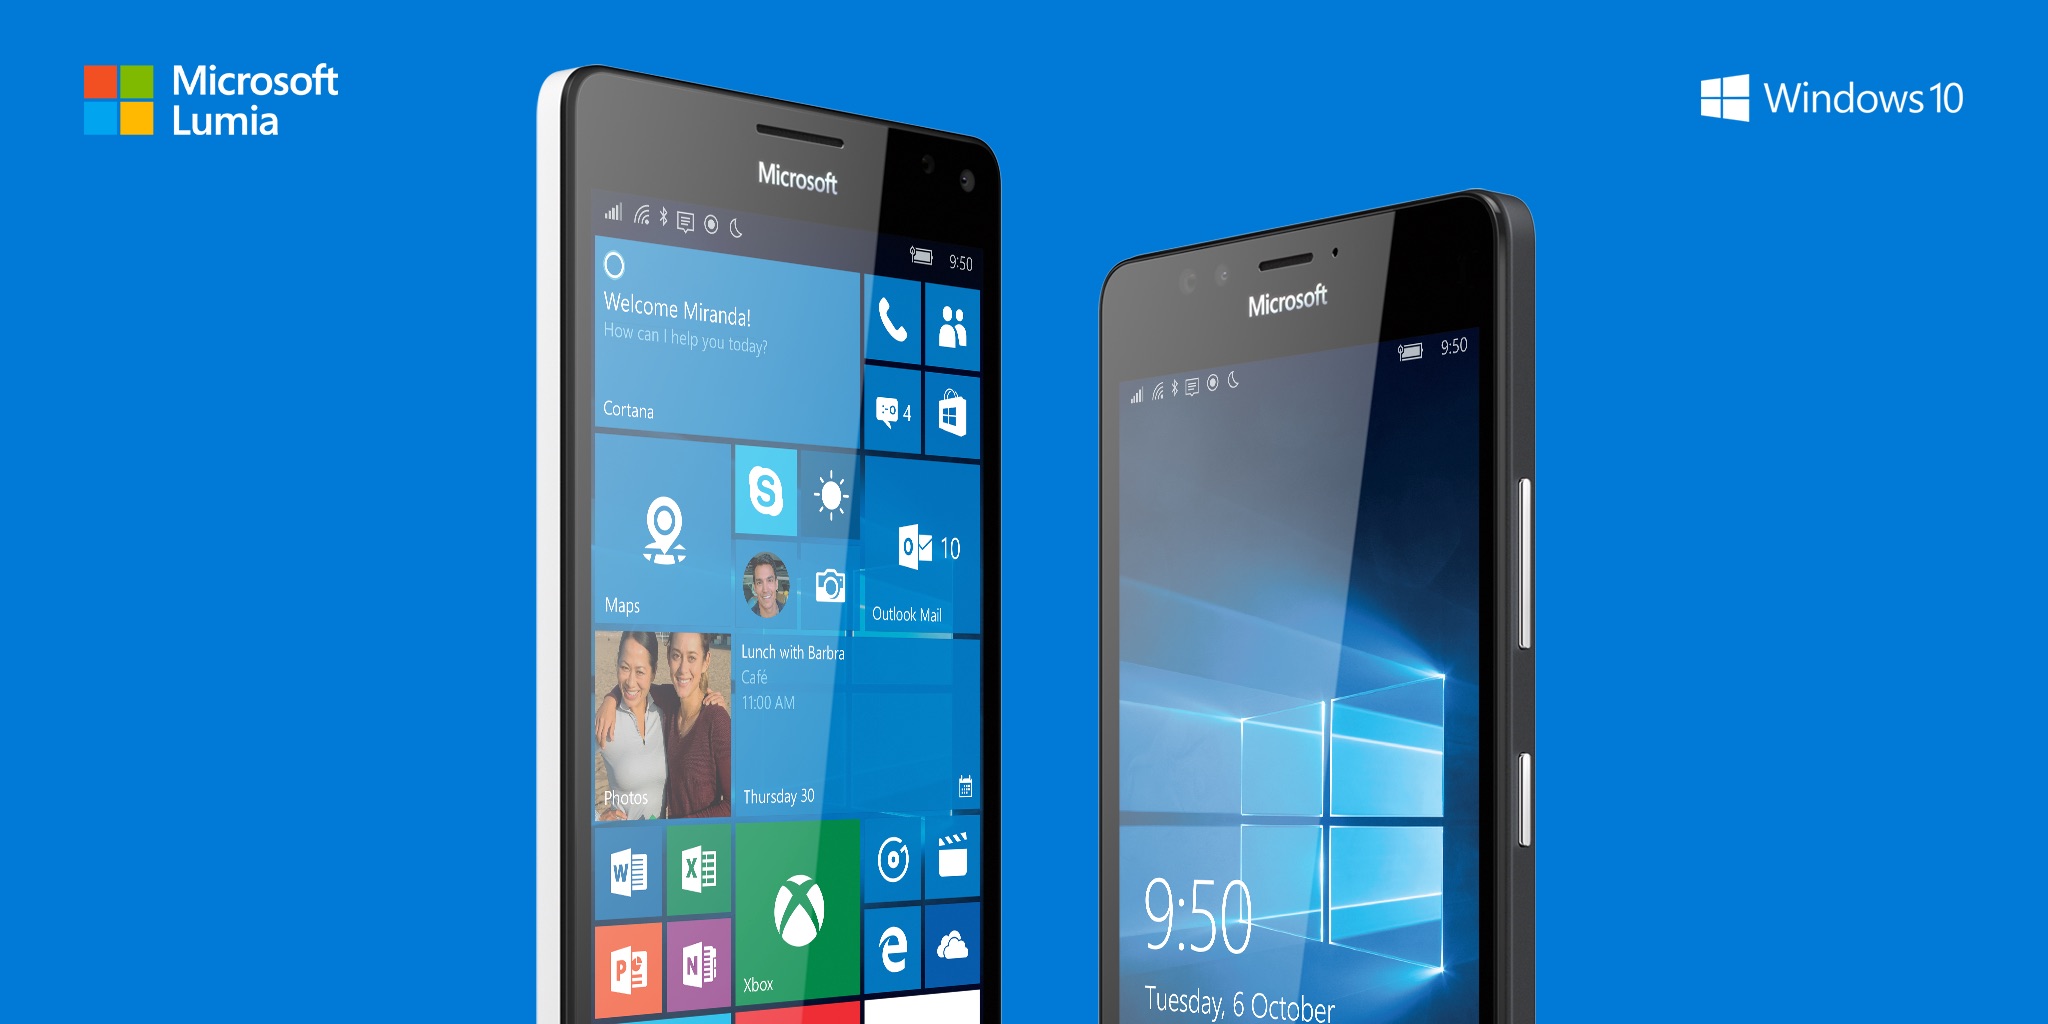 Microsoft Lumia 950 - Lumia 950 XL - Windows 10